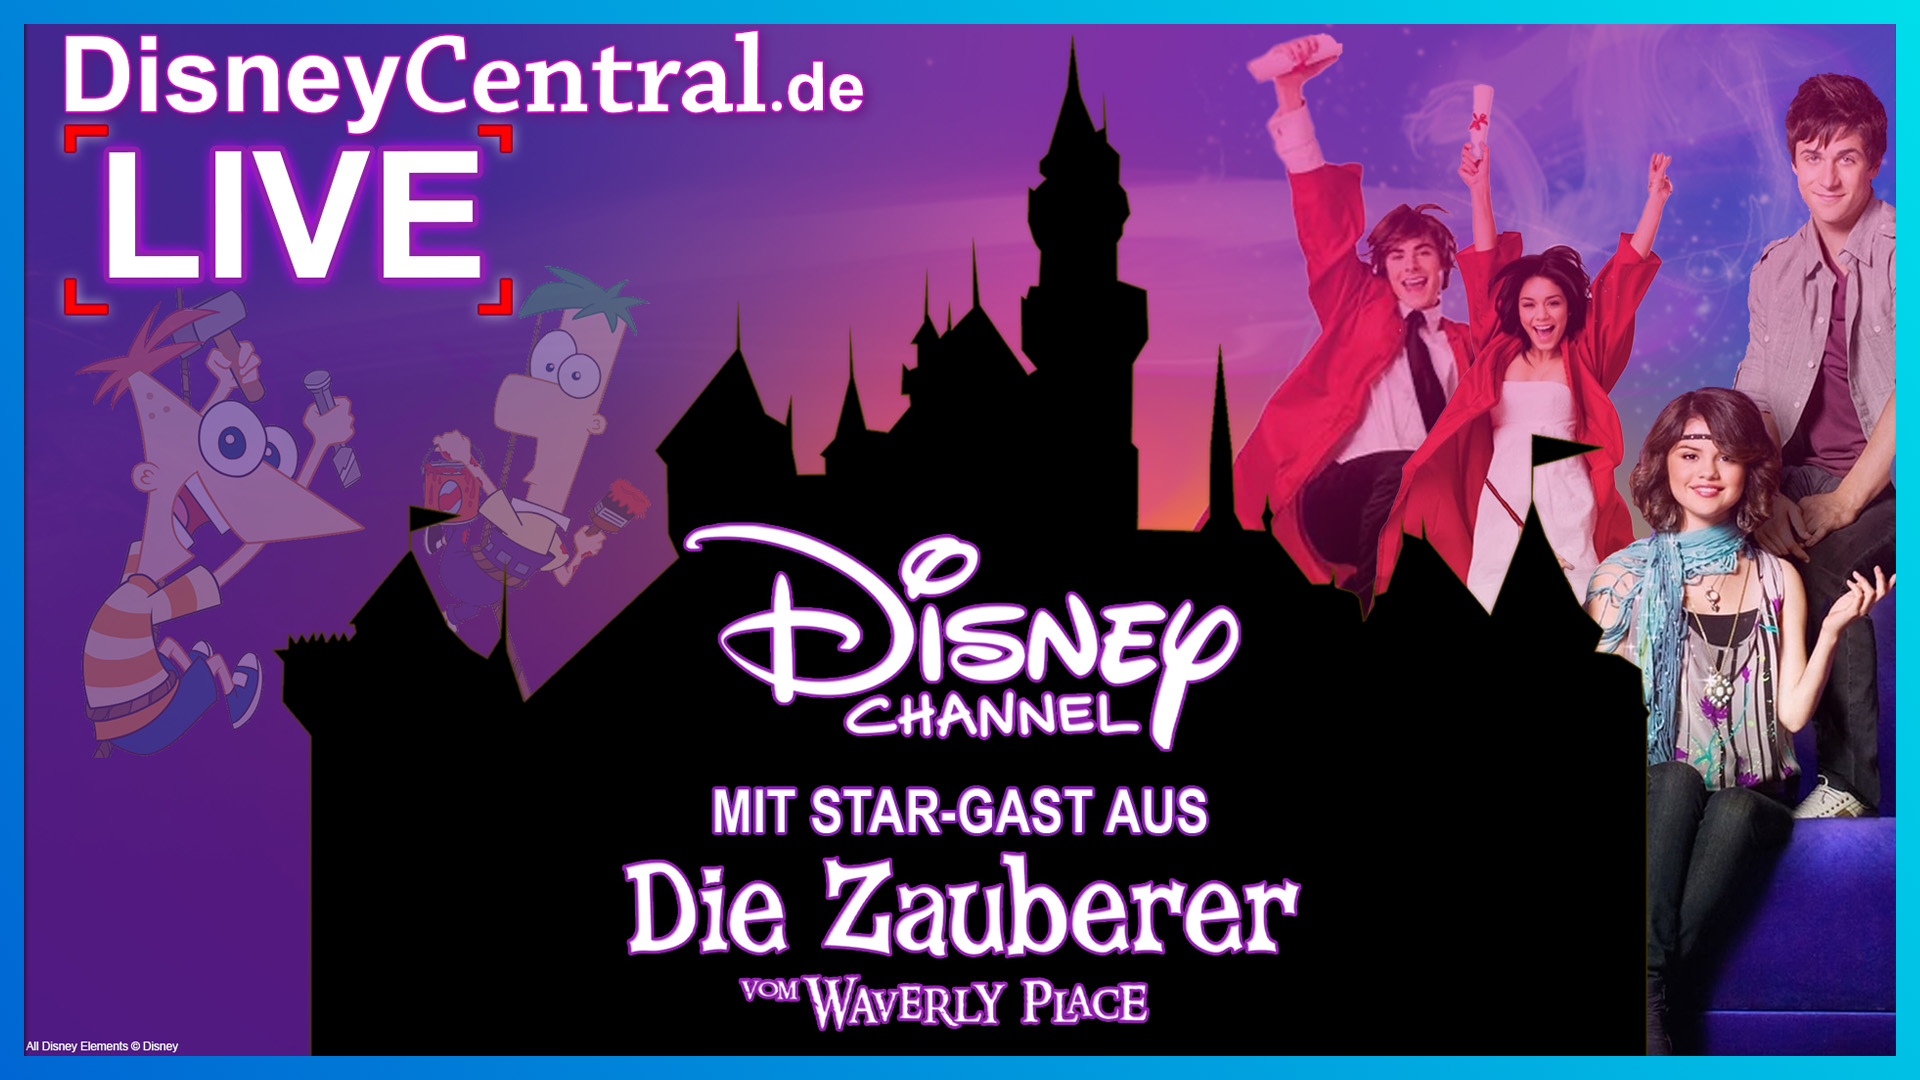 Podcast + Gewinnspiel: Disney Channel Talk & Interview mit Star-Gast aus “Die Zauberer vom Waverly Place” Patrick Roche | DisneyCentral.de LIVE: Calling all Dreamers! Episode 3